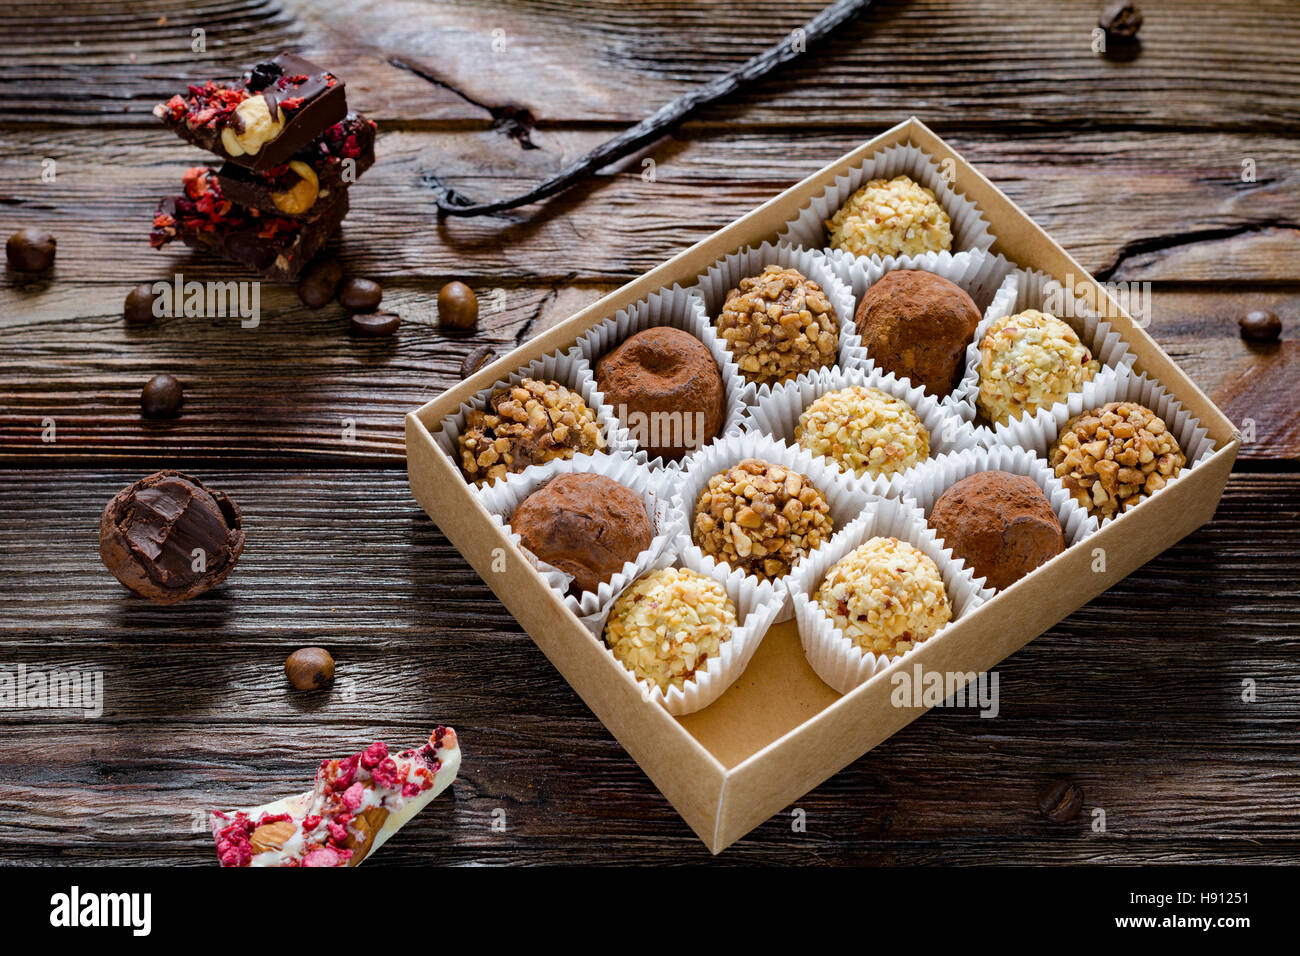 Boîte de chocolats, truffes au chocolat, divers, le chocolat blanc et praliné sur table en bois. Pas de truffe au chocolat bouchée. Banque D'Images